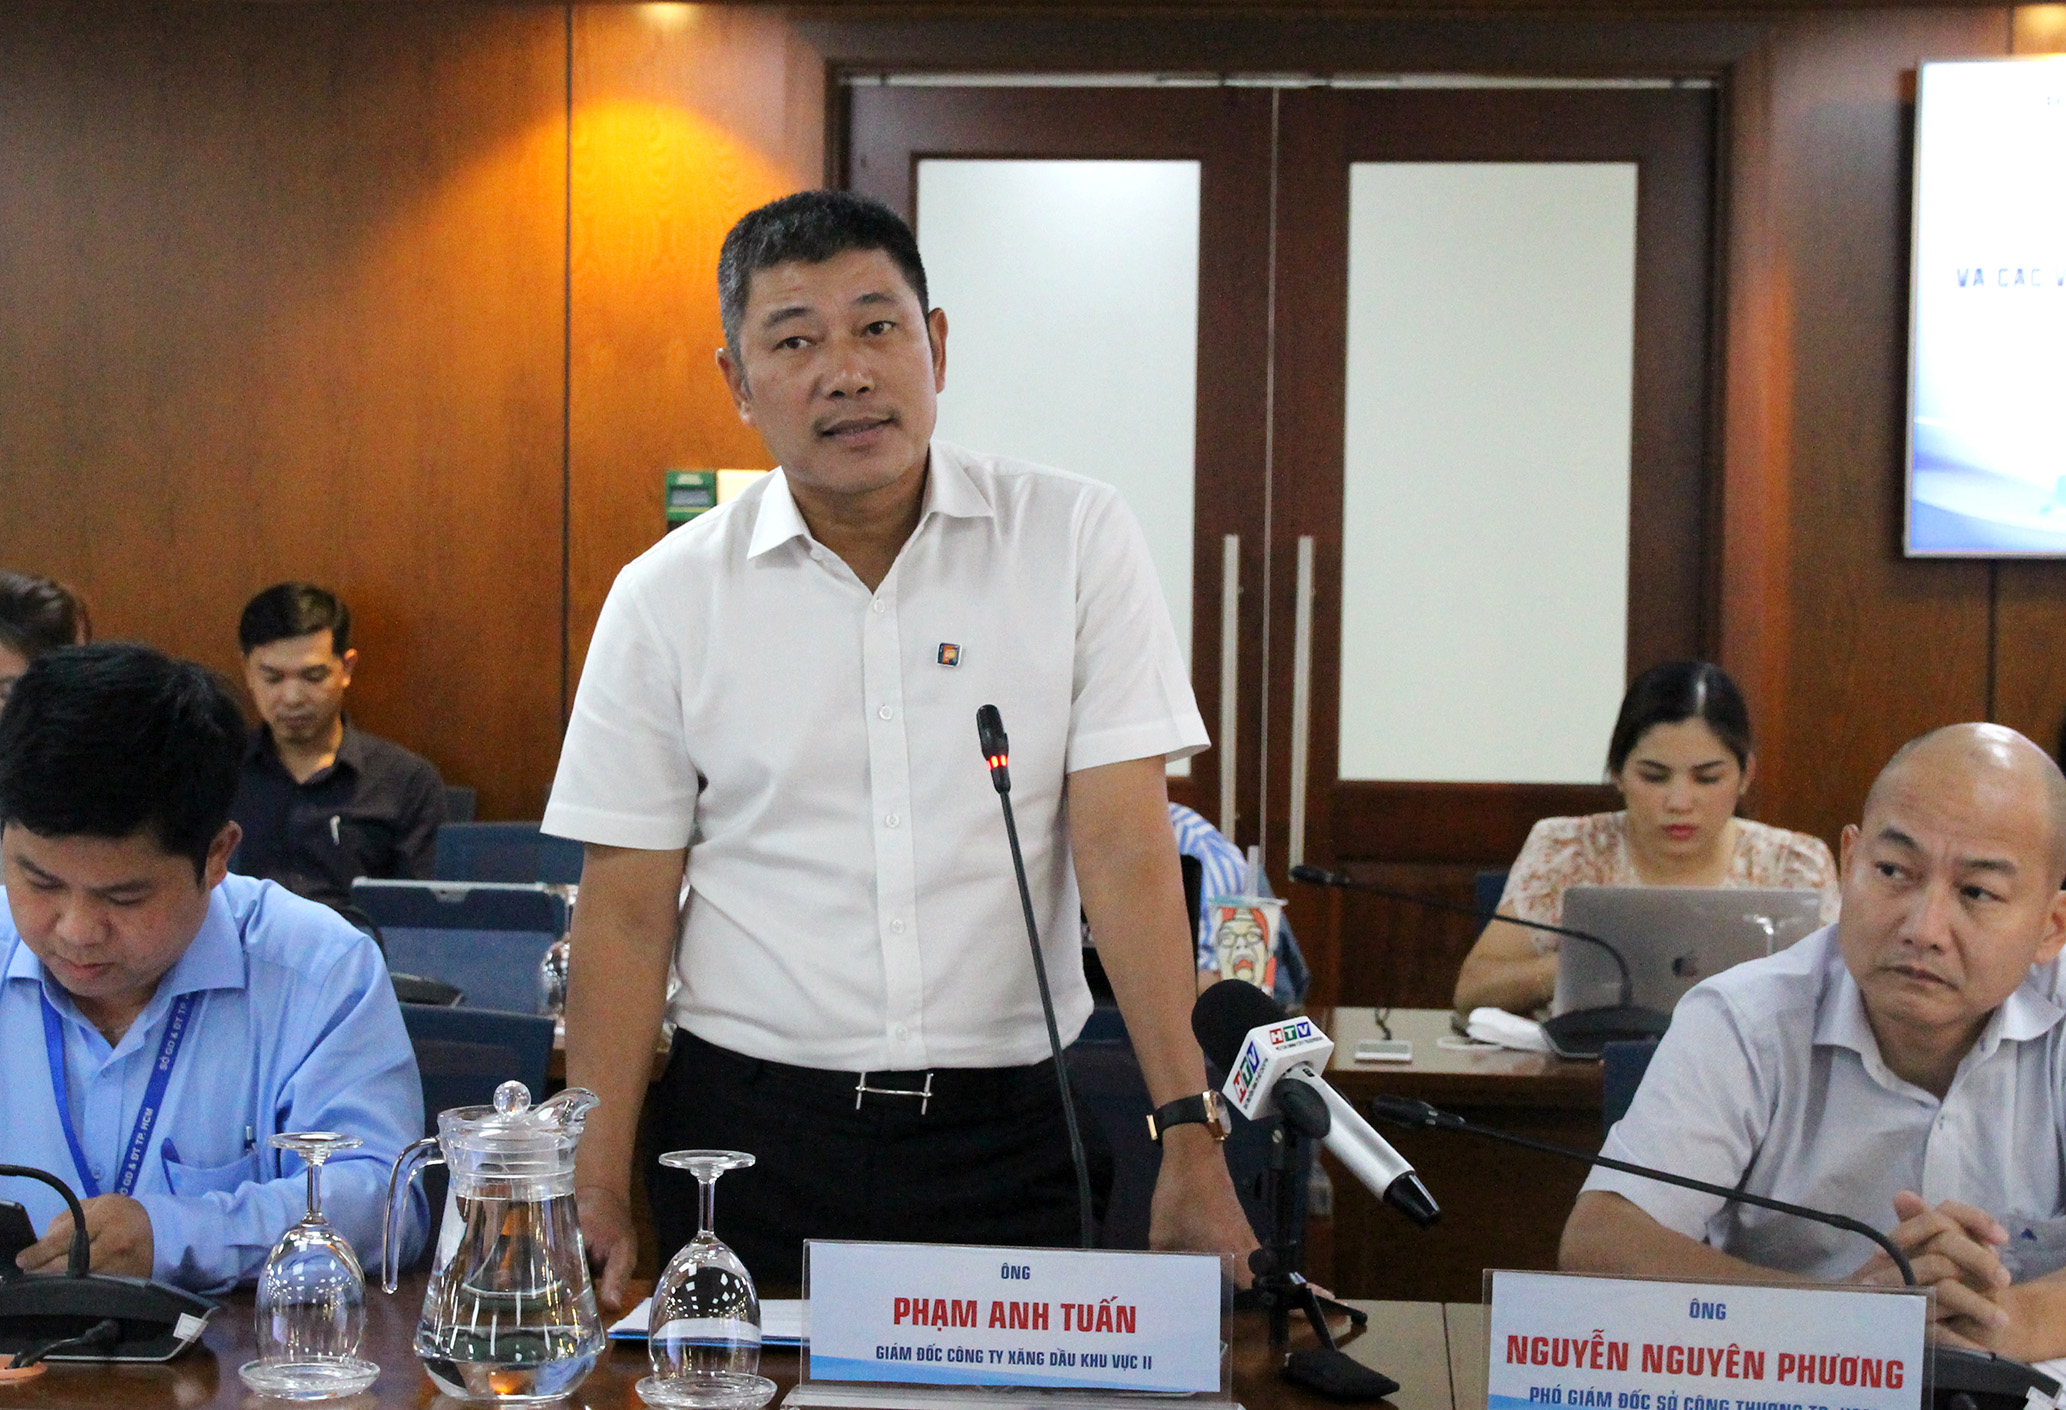 Đồng chí Phạm Anh Tuấn, Giám đốc Công ty Xăng dầu khu vực II (Petrolimex Sài Gòn) phát biểu (Ảnh: HH)